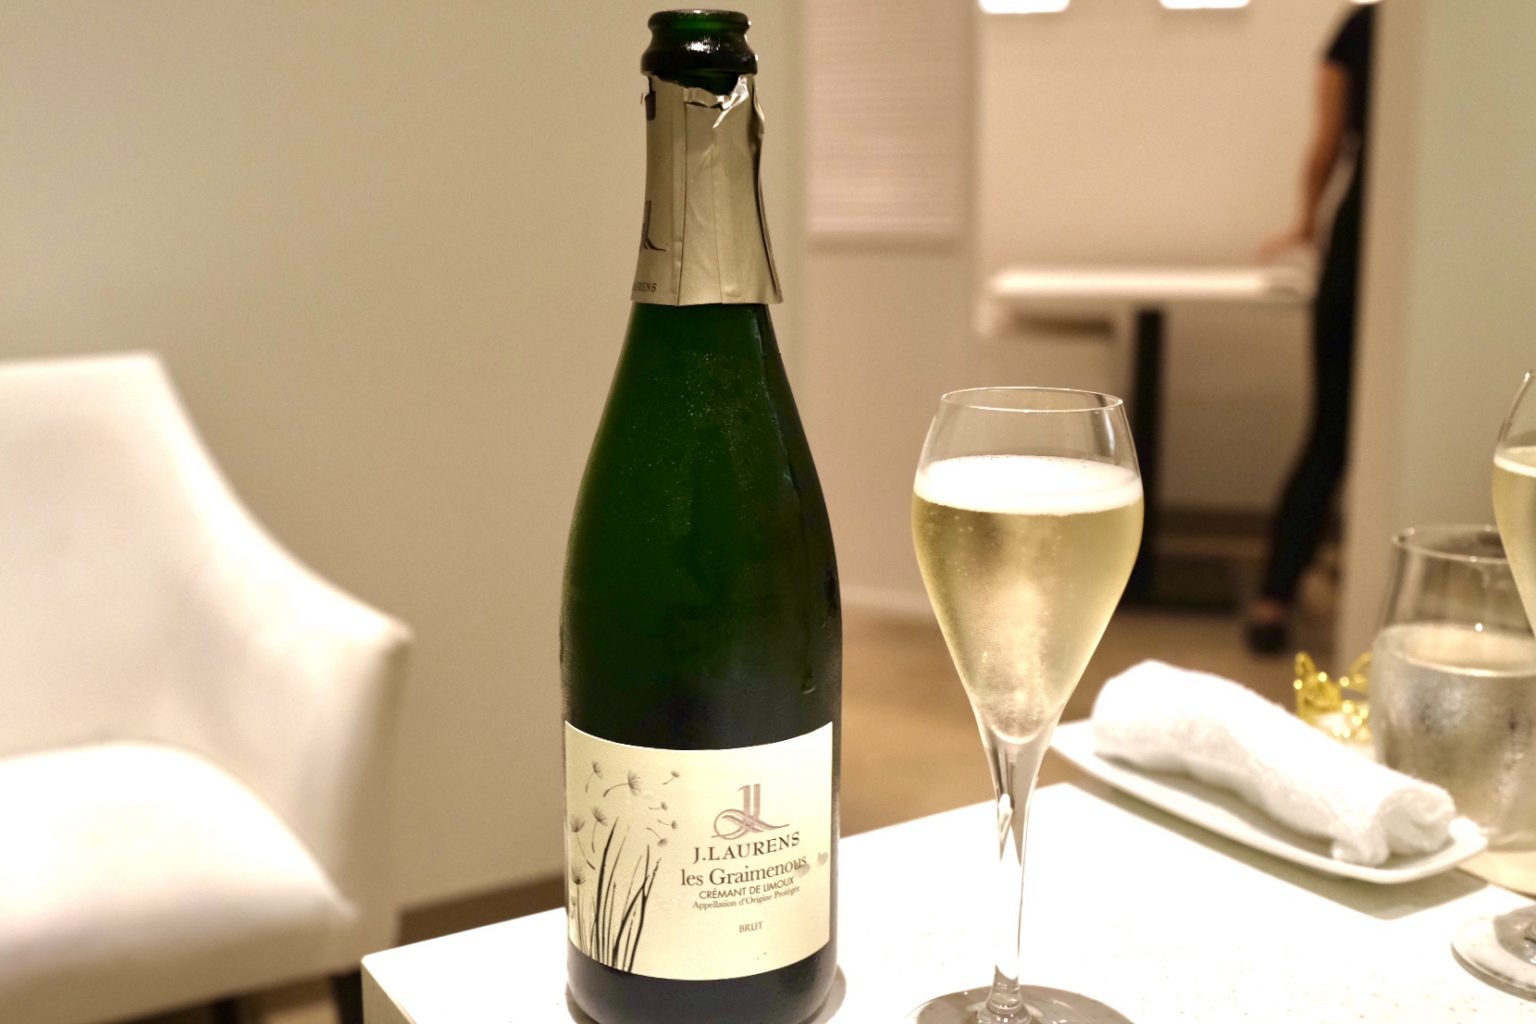 乾杯時にいただいたフランス・ラングドックのスパークリングワイン「Crémant de Limoux Les Graimenous Brut」。